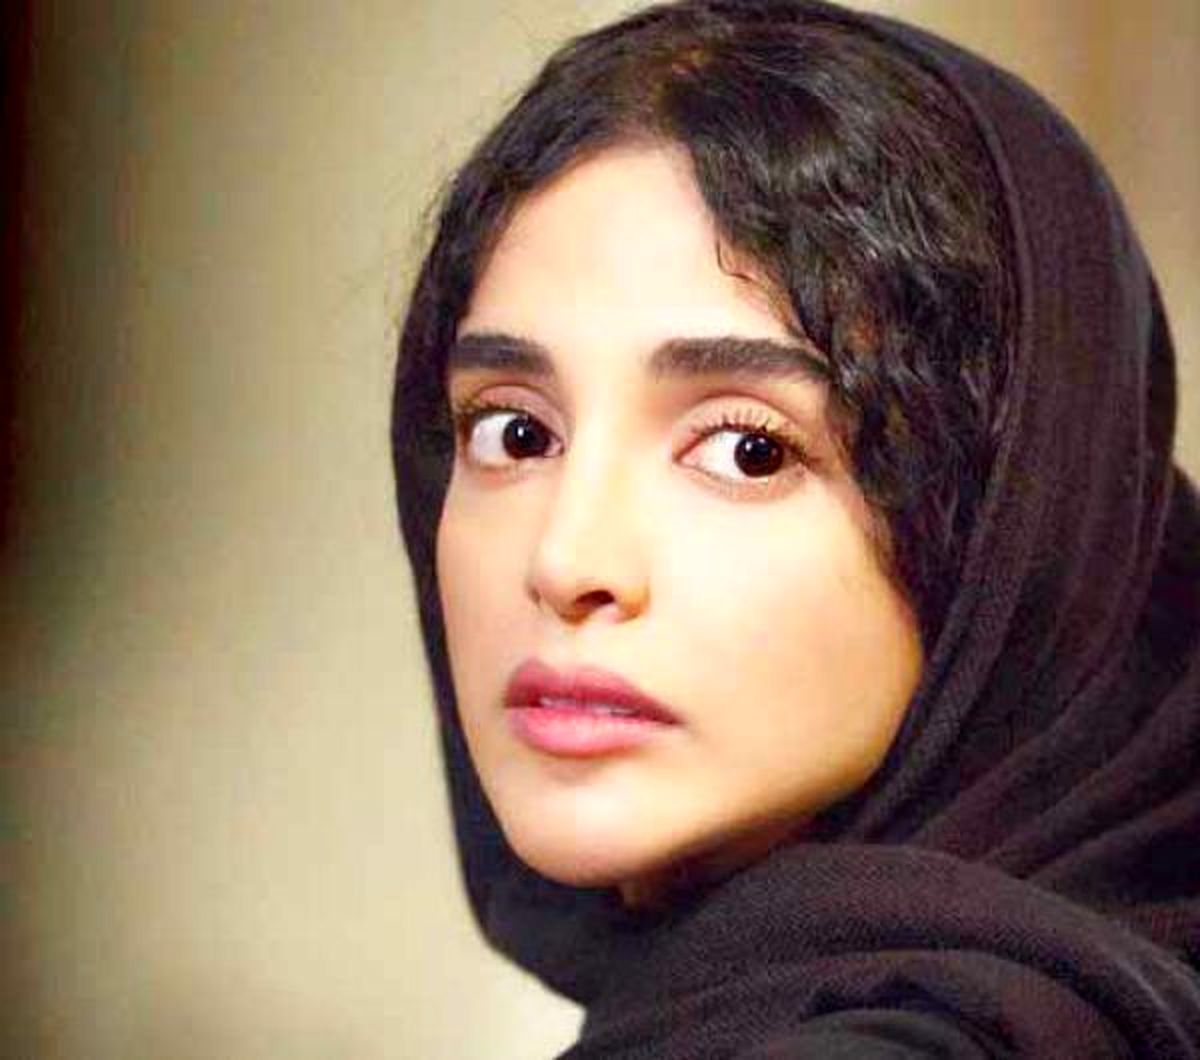 ثانیه های منقلب کننده بازیگر زن سینمای ایران لابلای اشک های تمام نشدنی یک مادر با قلبی از جنس فرشته‌ها